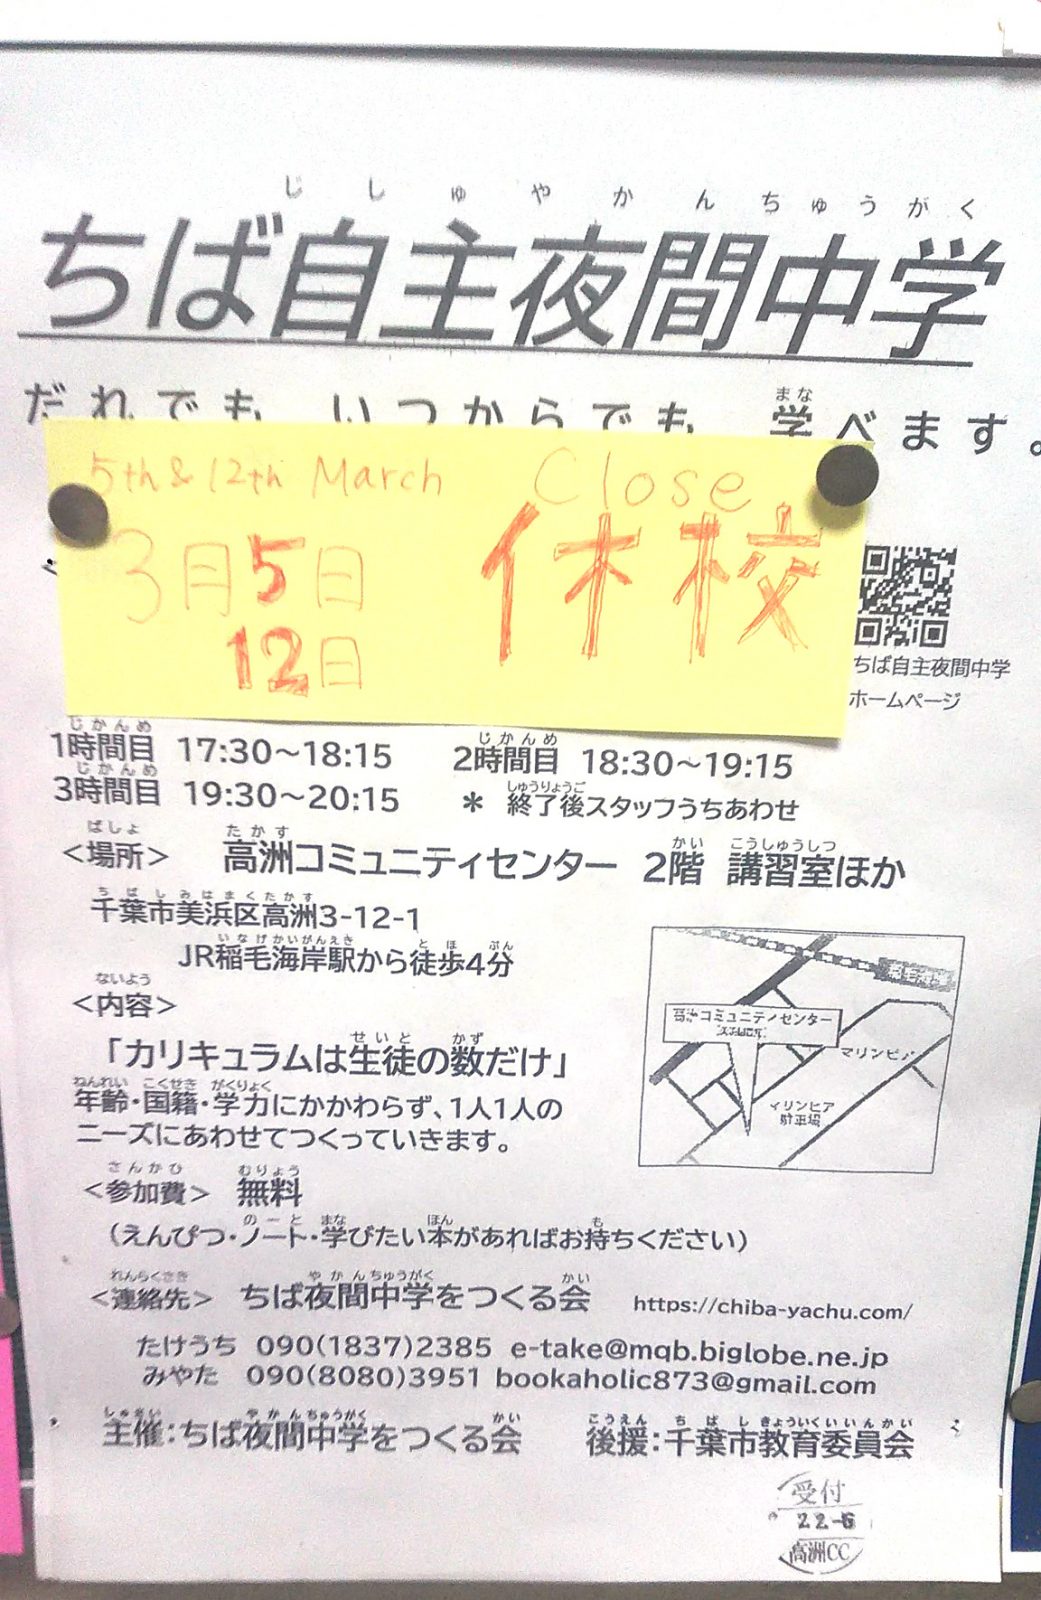 【3月5日・12日】休校のお知らせ